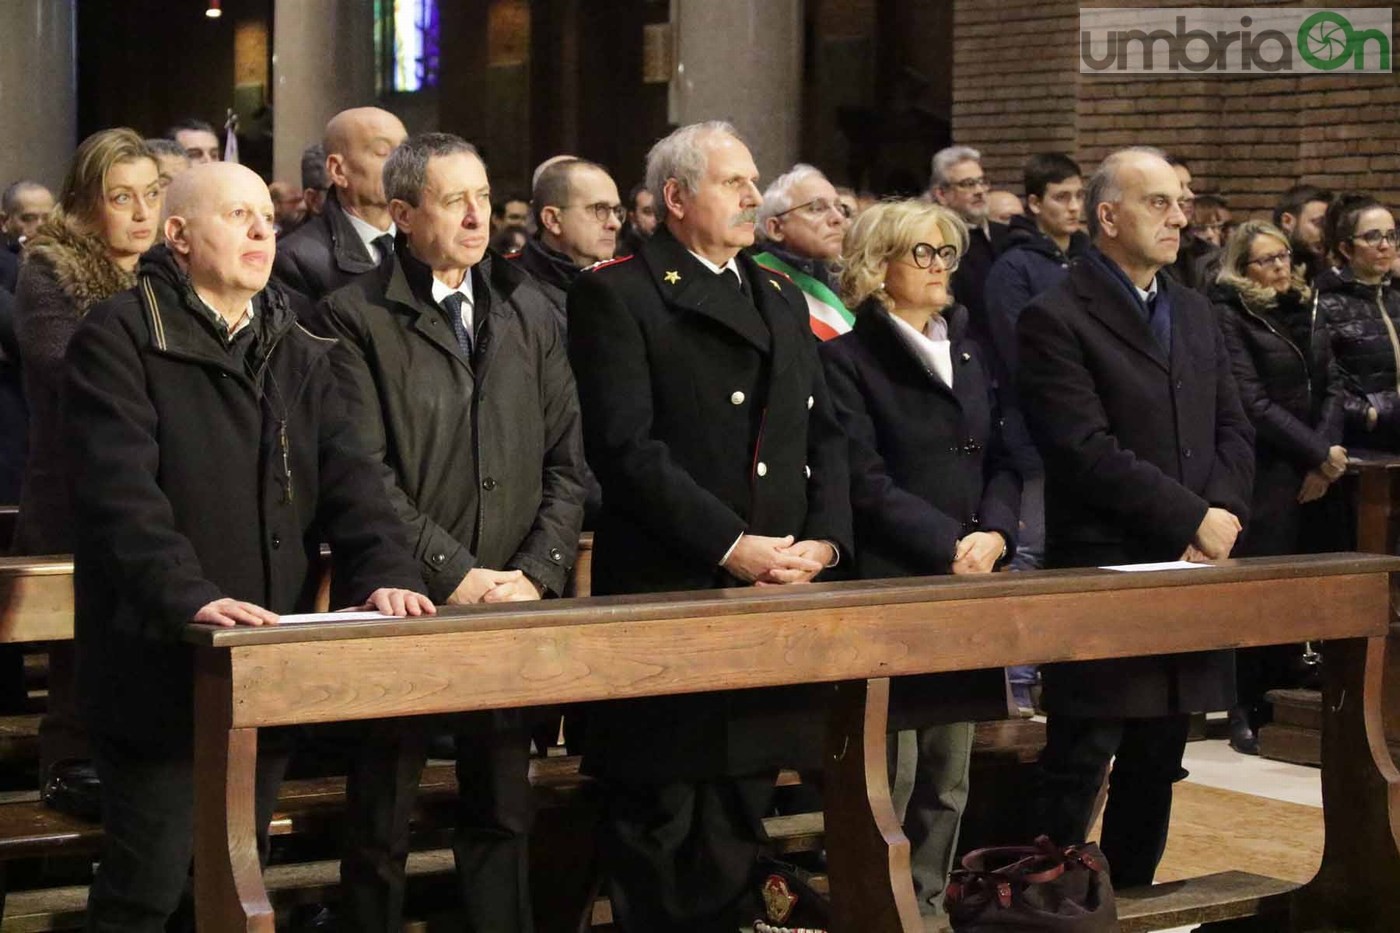 Funerali Maurizio Santoloci (foto A. Mirimao) - 9 gennaio 2017 (26)